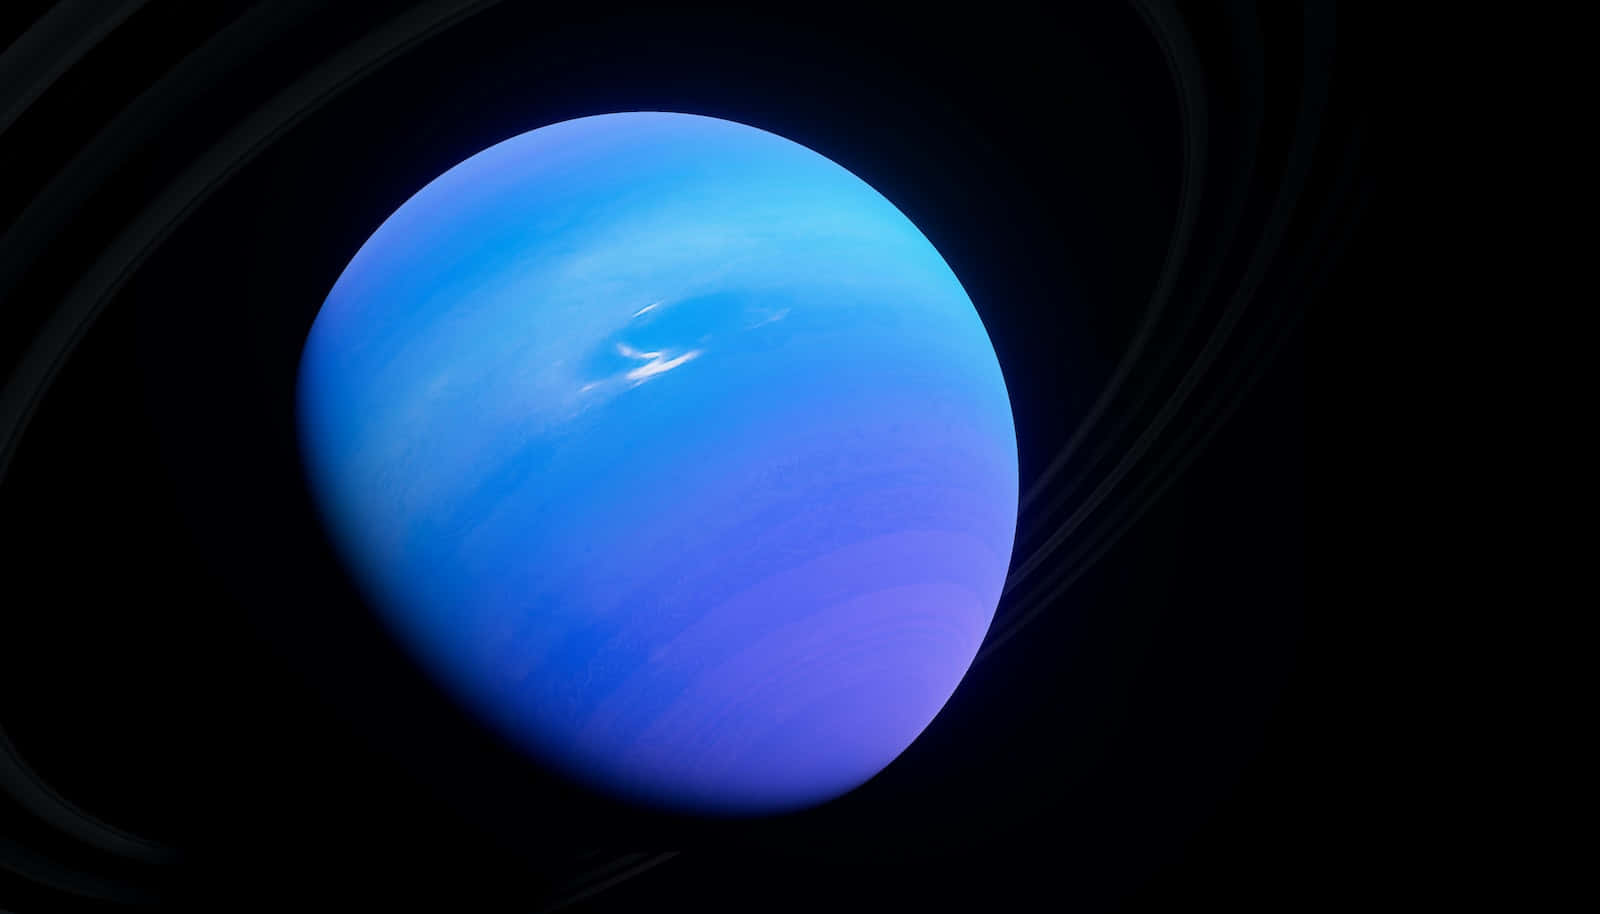 Stunning View of the Icy Giant Uranus